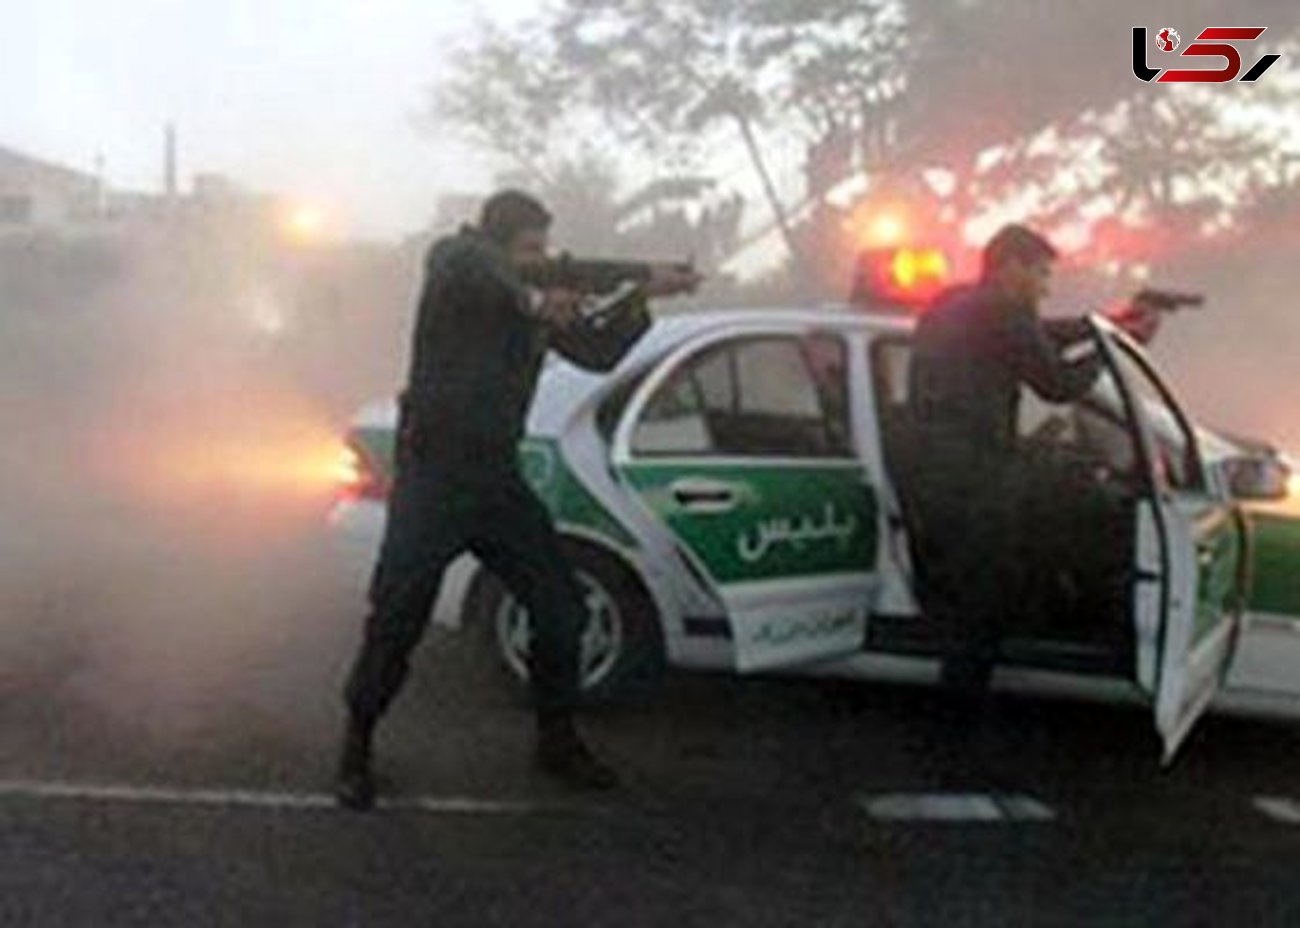 راننده پراید در حالت غیرطبیعی با شلیک مستقیم پلیس نیشابور دستگیر شد

